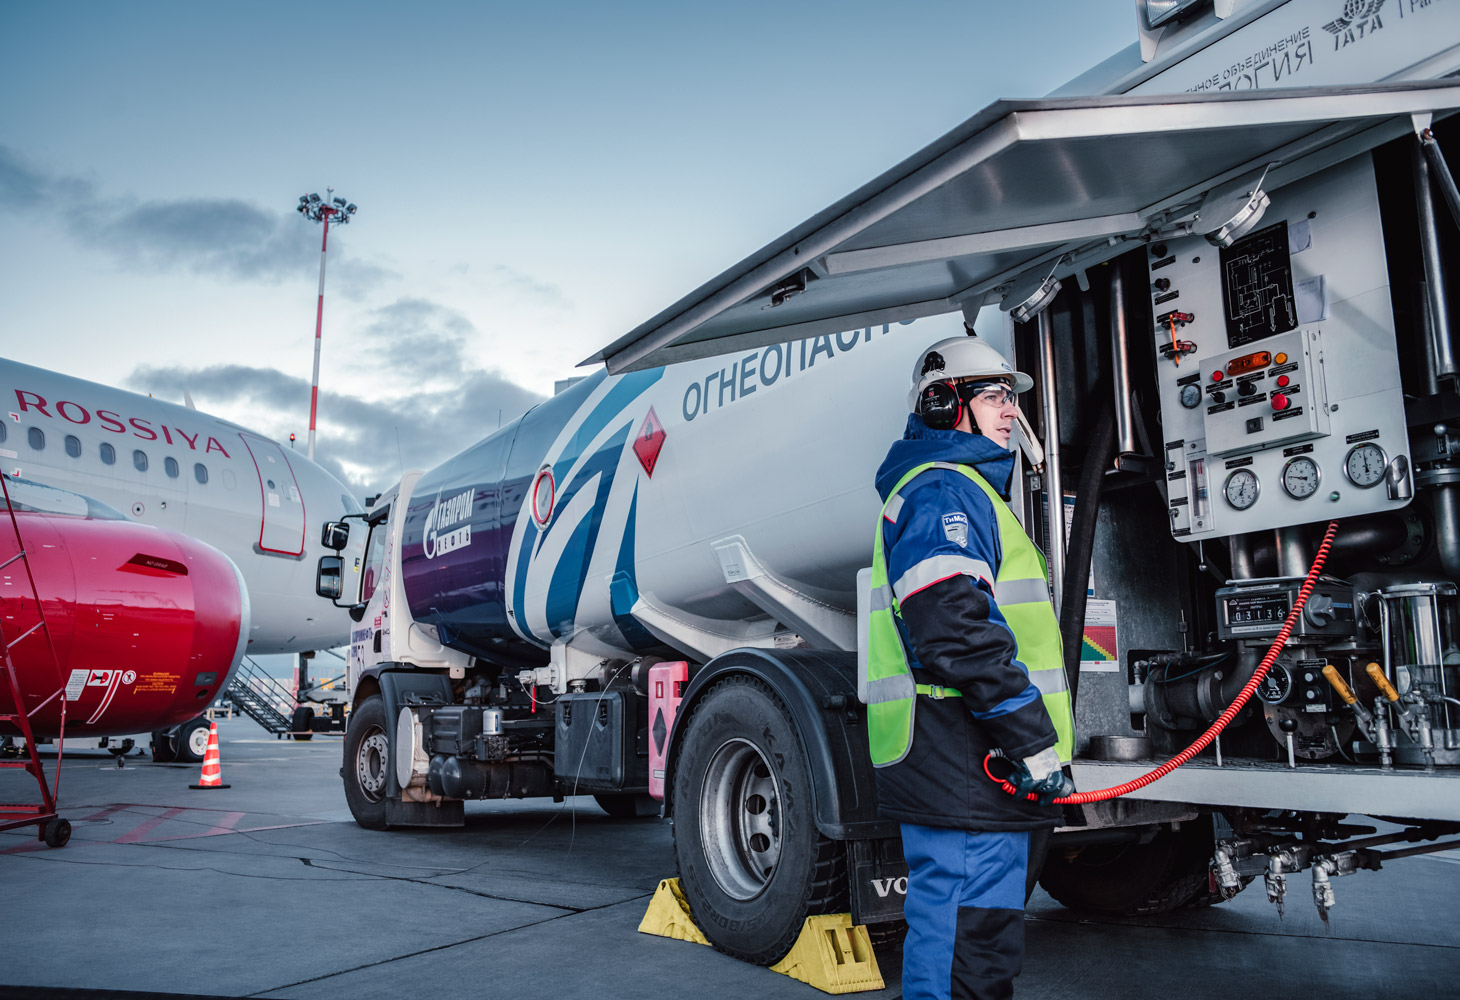 Gazprom Neft deploys innovative microbial-contamination testing system